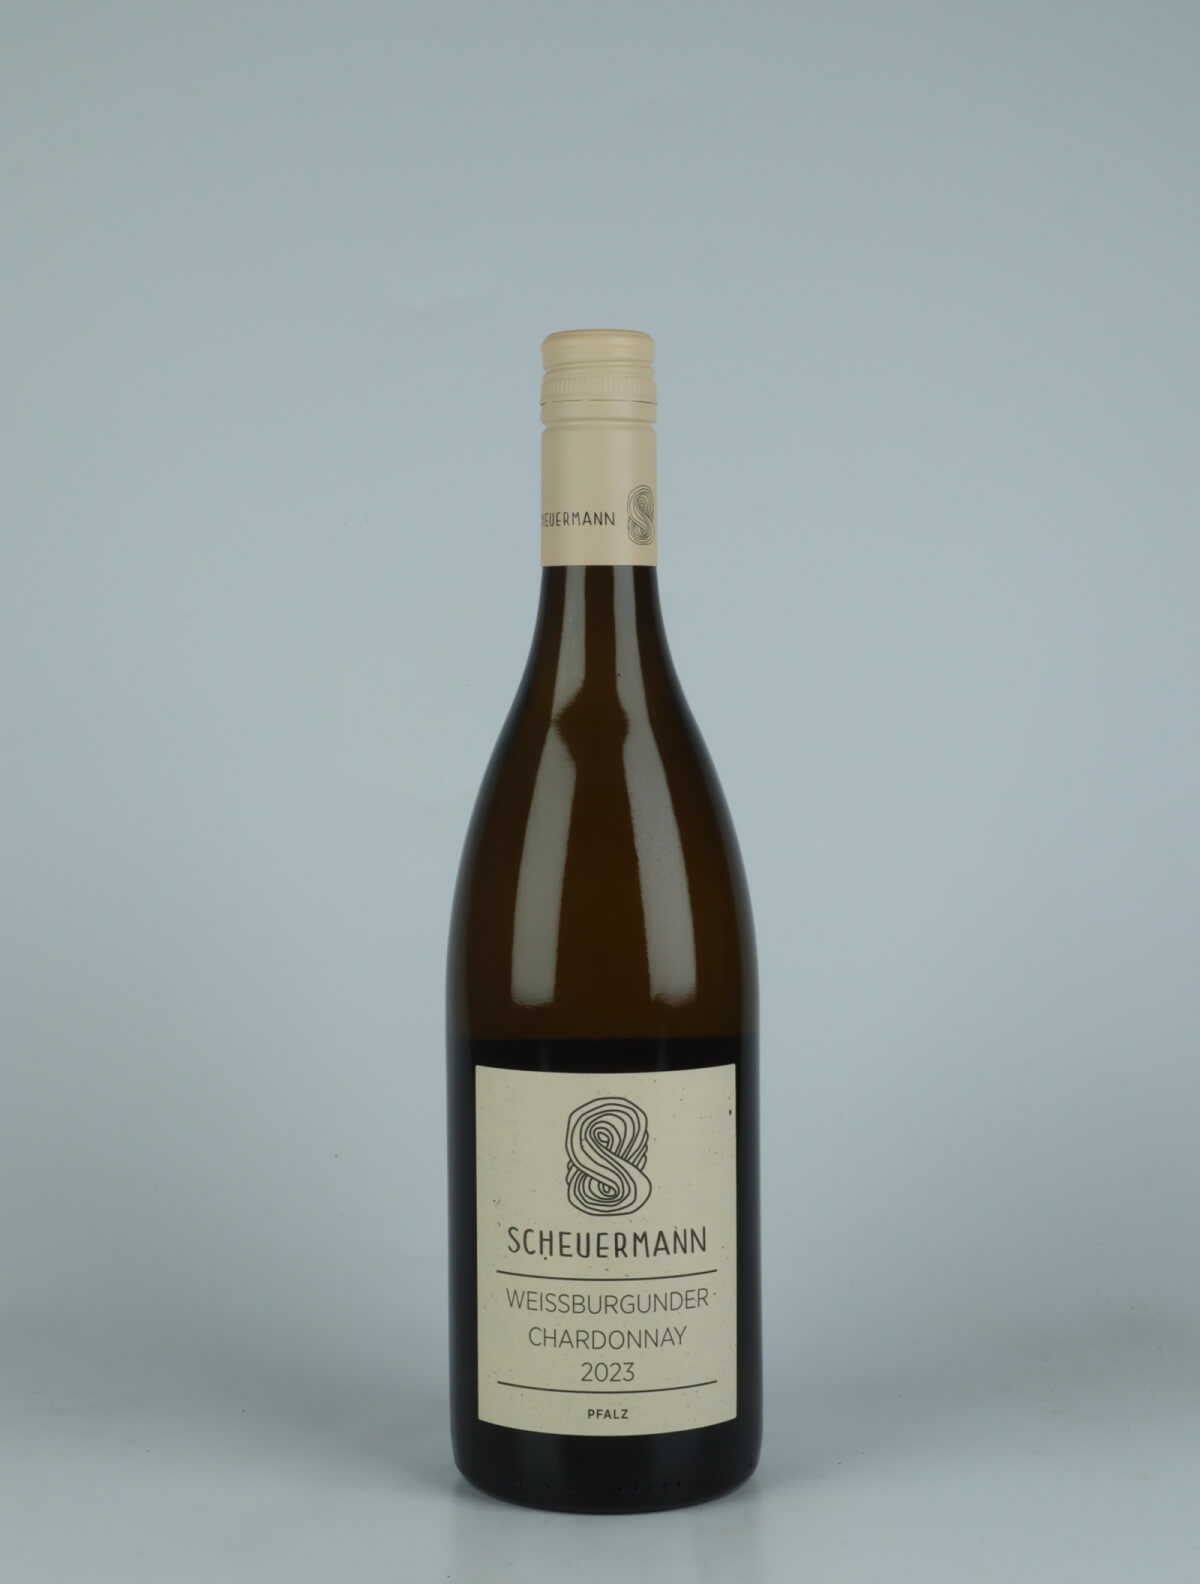 A bottle 2023 Weissburgunder & Chardonnay White wine from Weingut Scheuermann, Pfalz in Germany